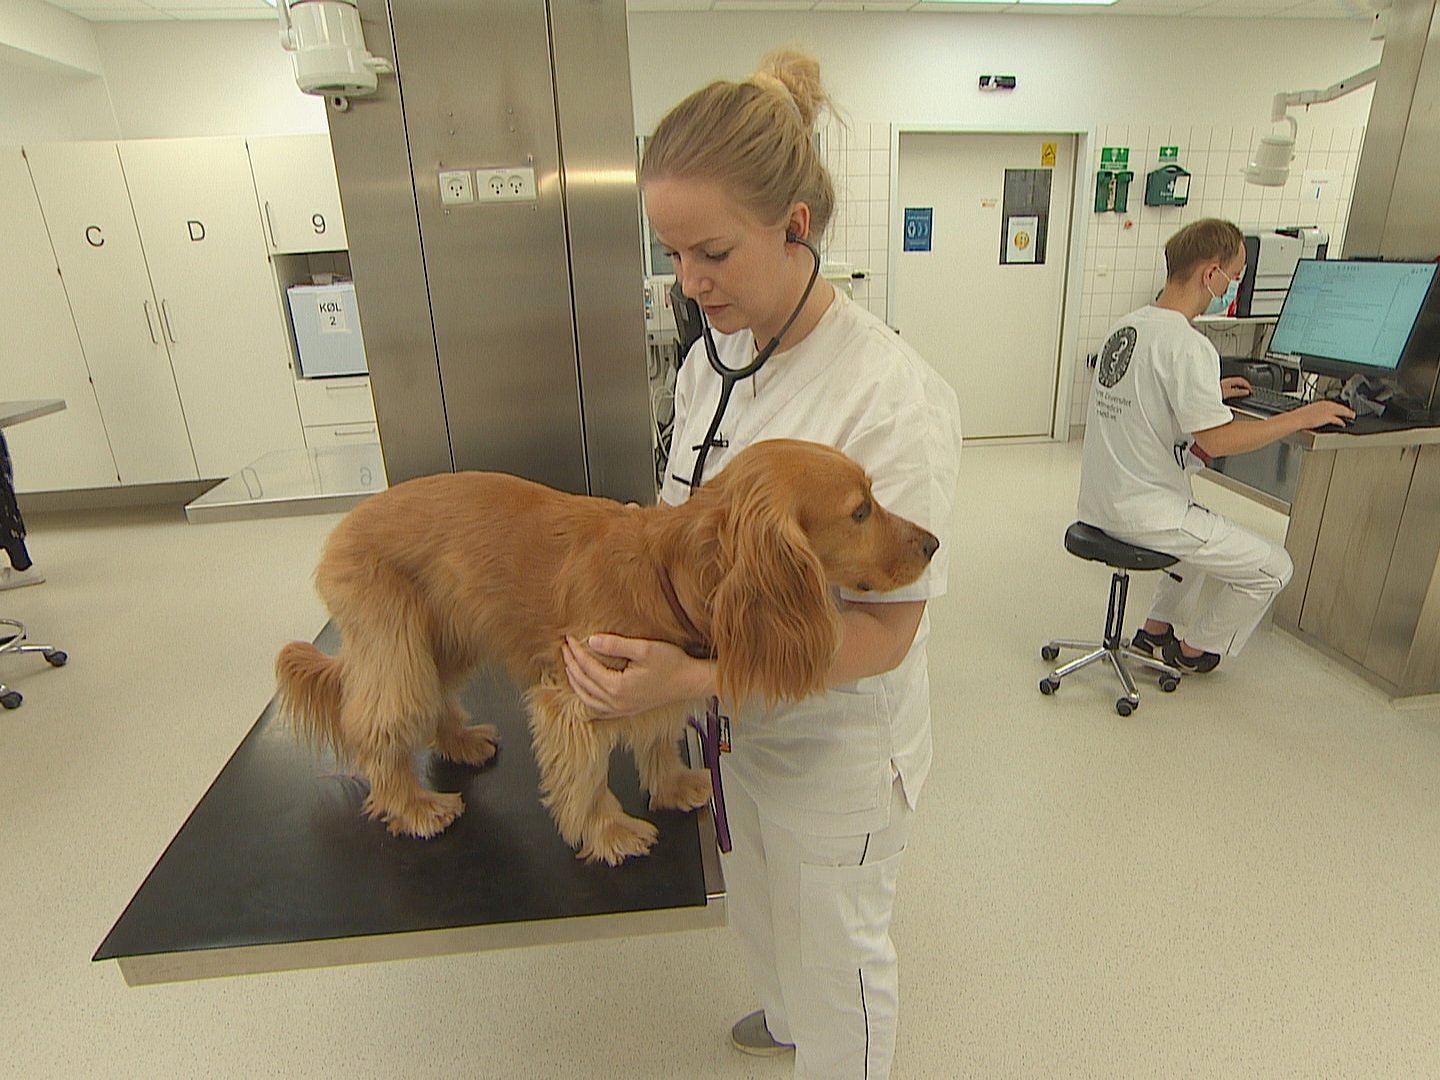 Dyrehospital søger hunde aflivning: "Nødvendigt, hvis man skal uddanne | TV 2 Kosmopol